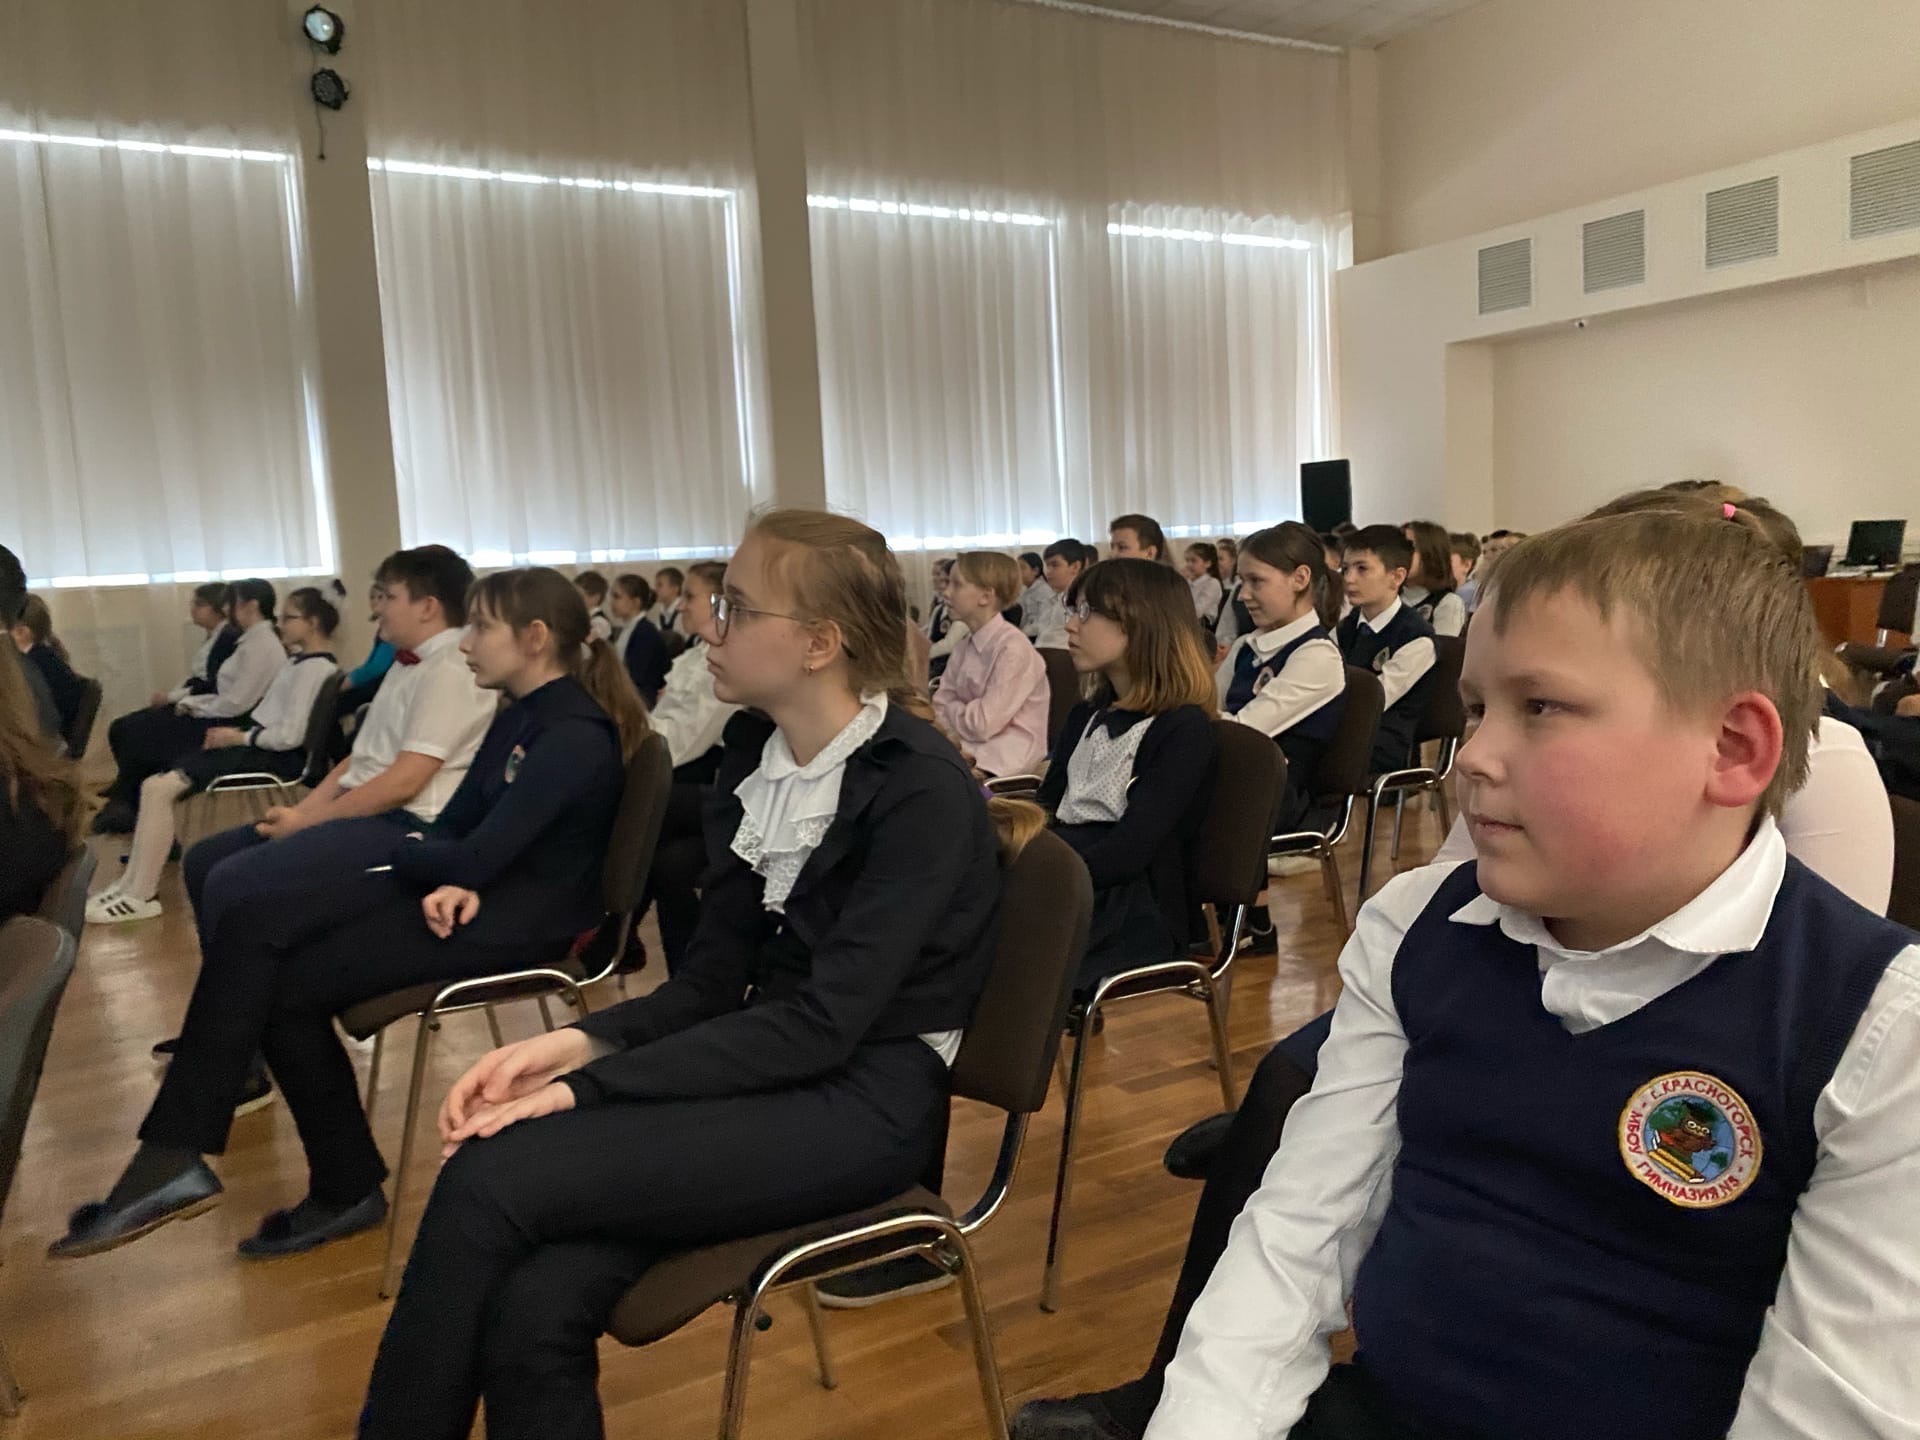 «Единая Россия» запустила образовательный проект «Киноуроки» по всей стране